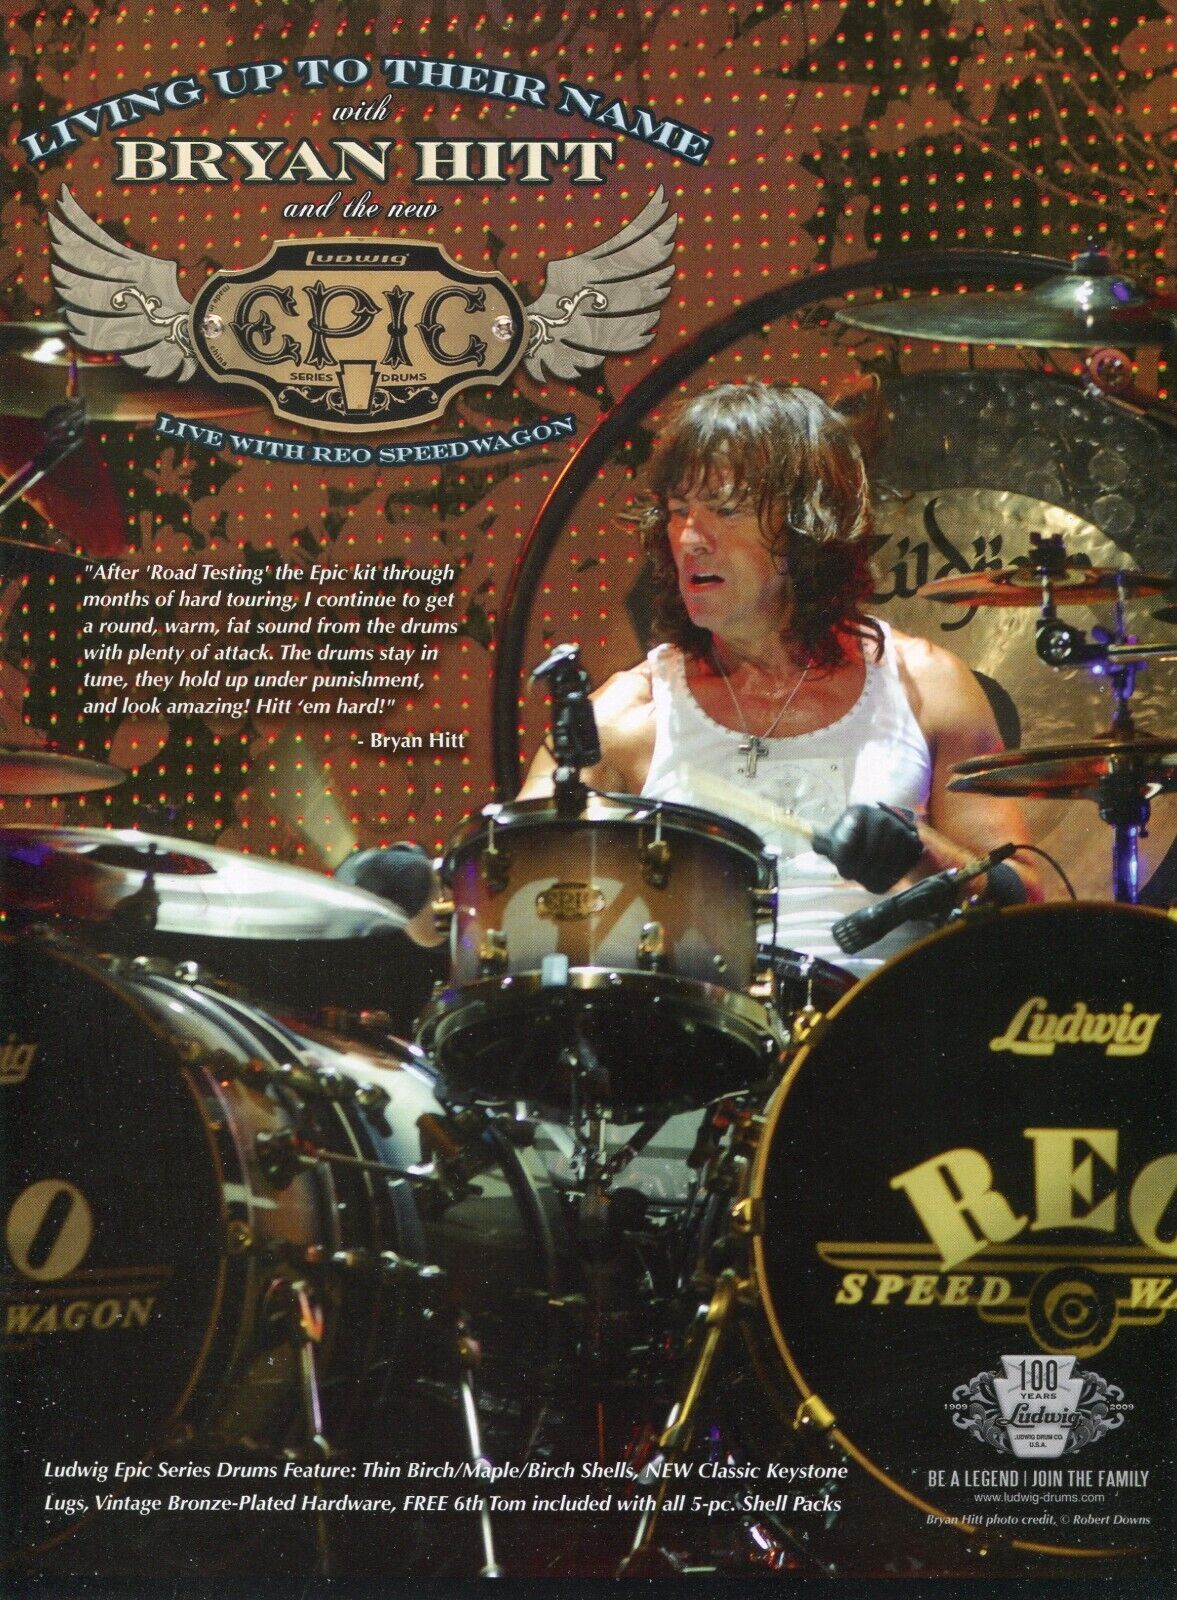 2009 Print Ad of Ludwig Epic Seris Drum Kit w Bryan Hitt of REO Speedwagon